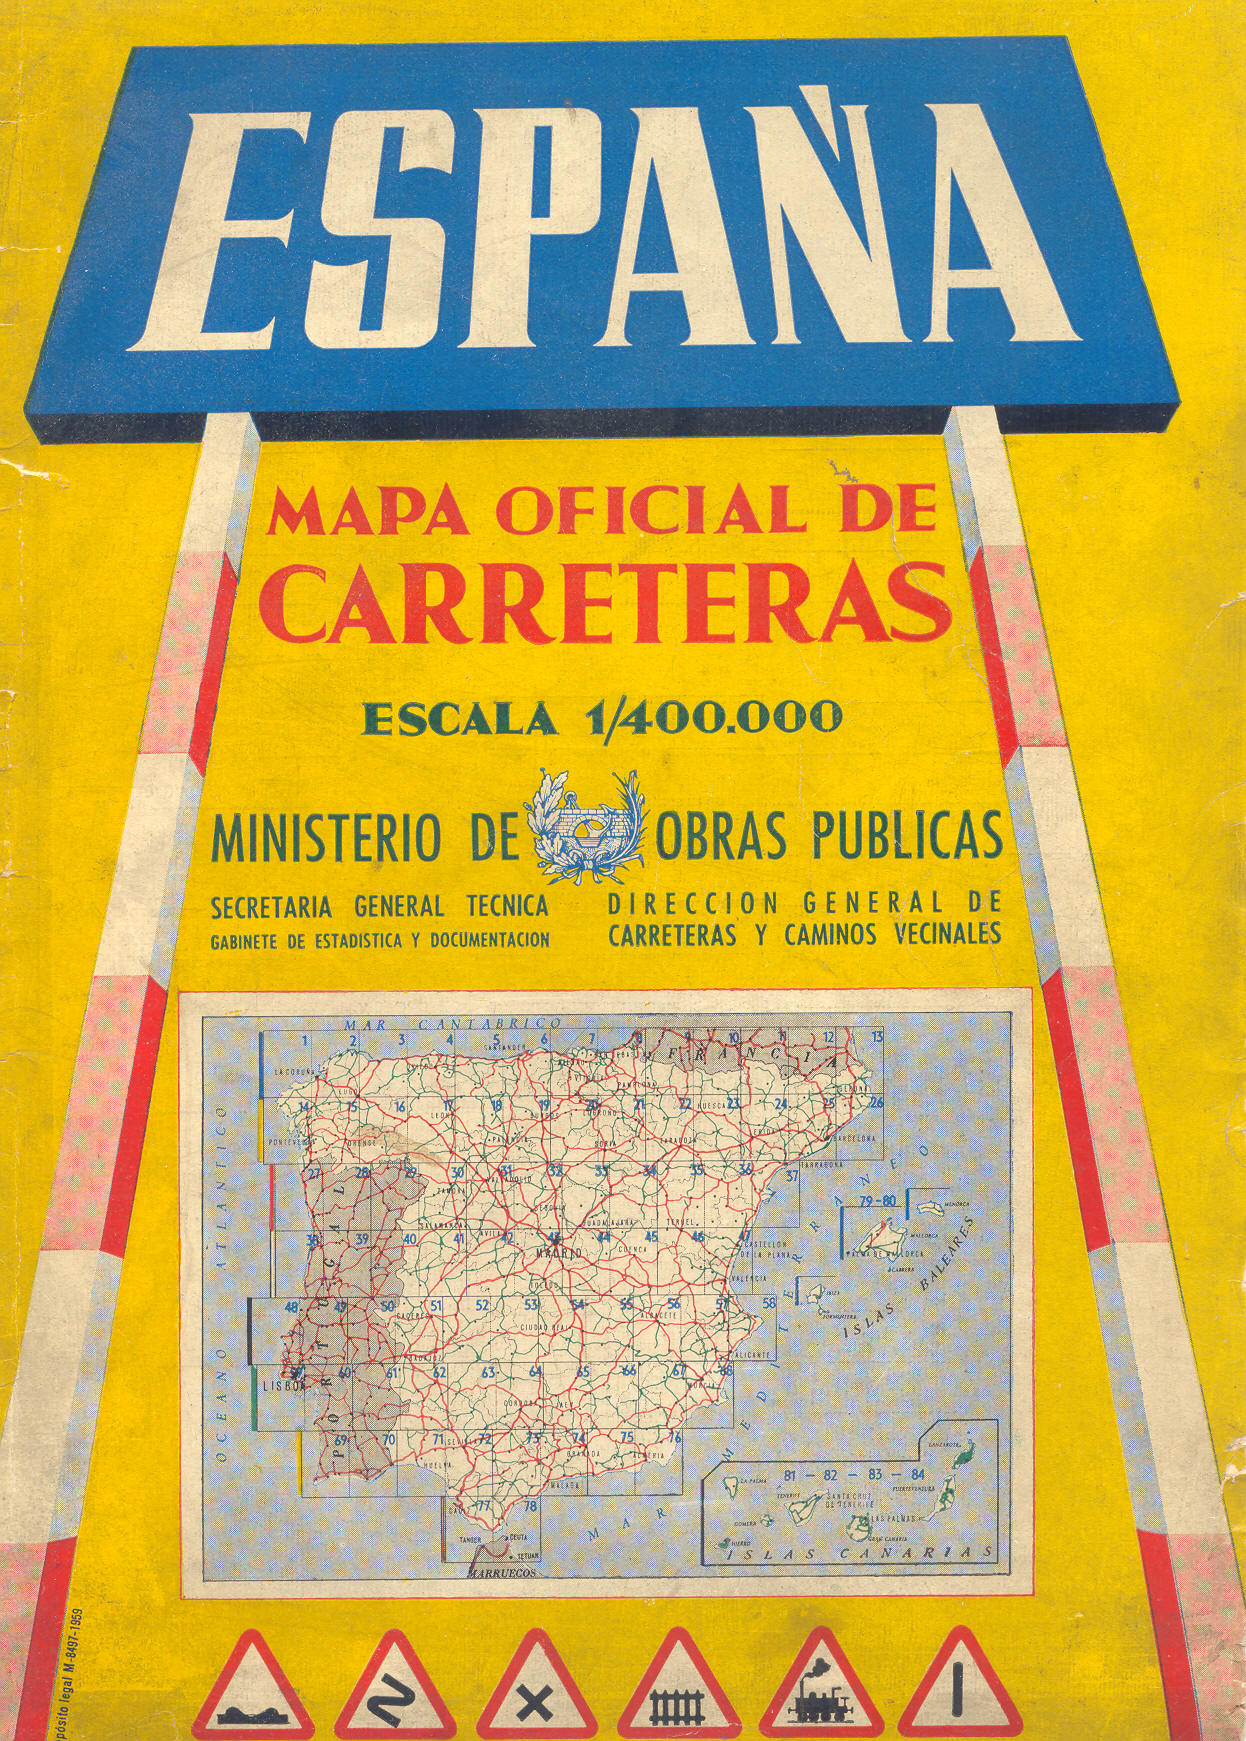 Mapa oficial de carreteras de España 1959 - Tamaño completo